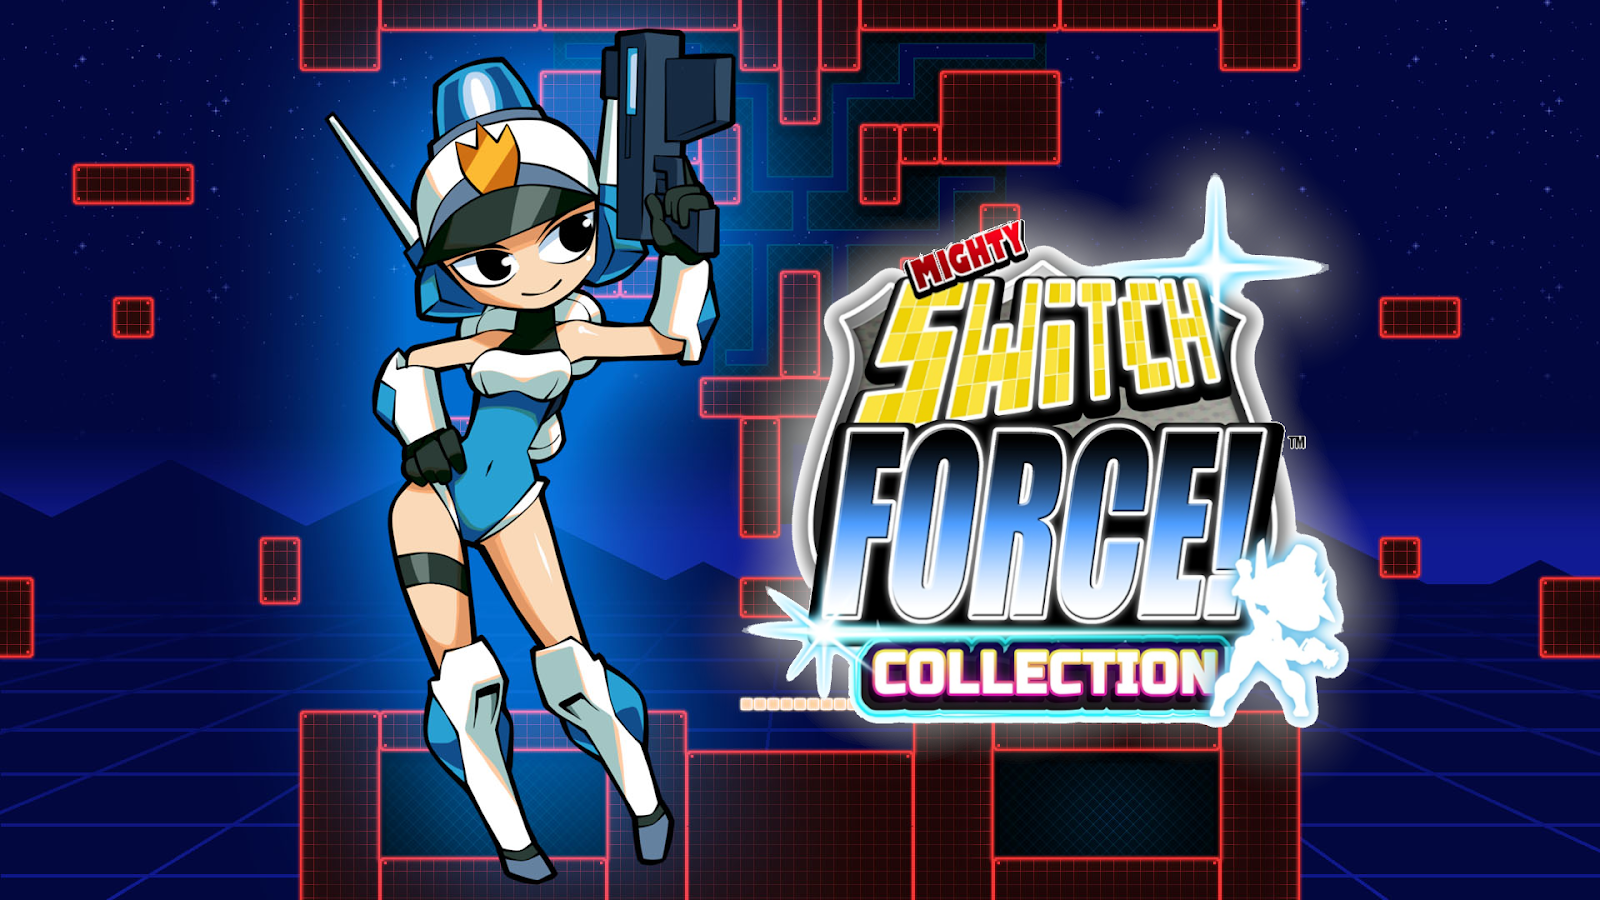 Mighty Switch Force! Collection (Multi): dicas para ser a melhor defensora  da justiça - GameBlast